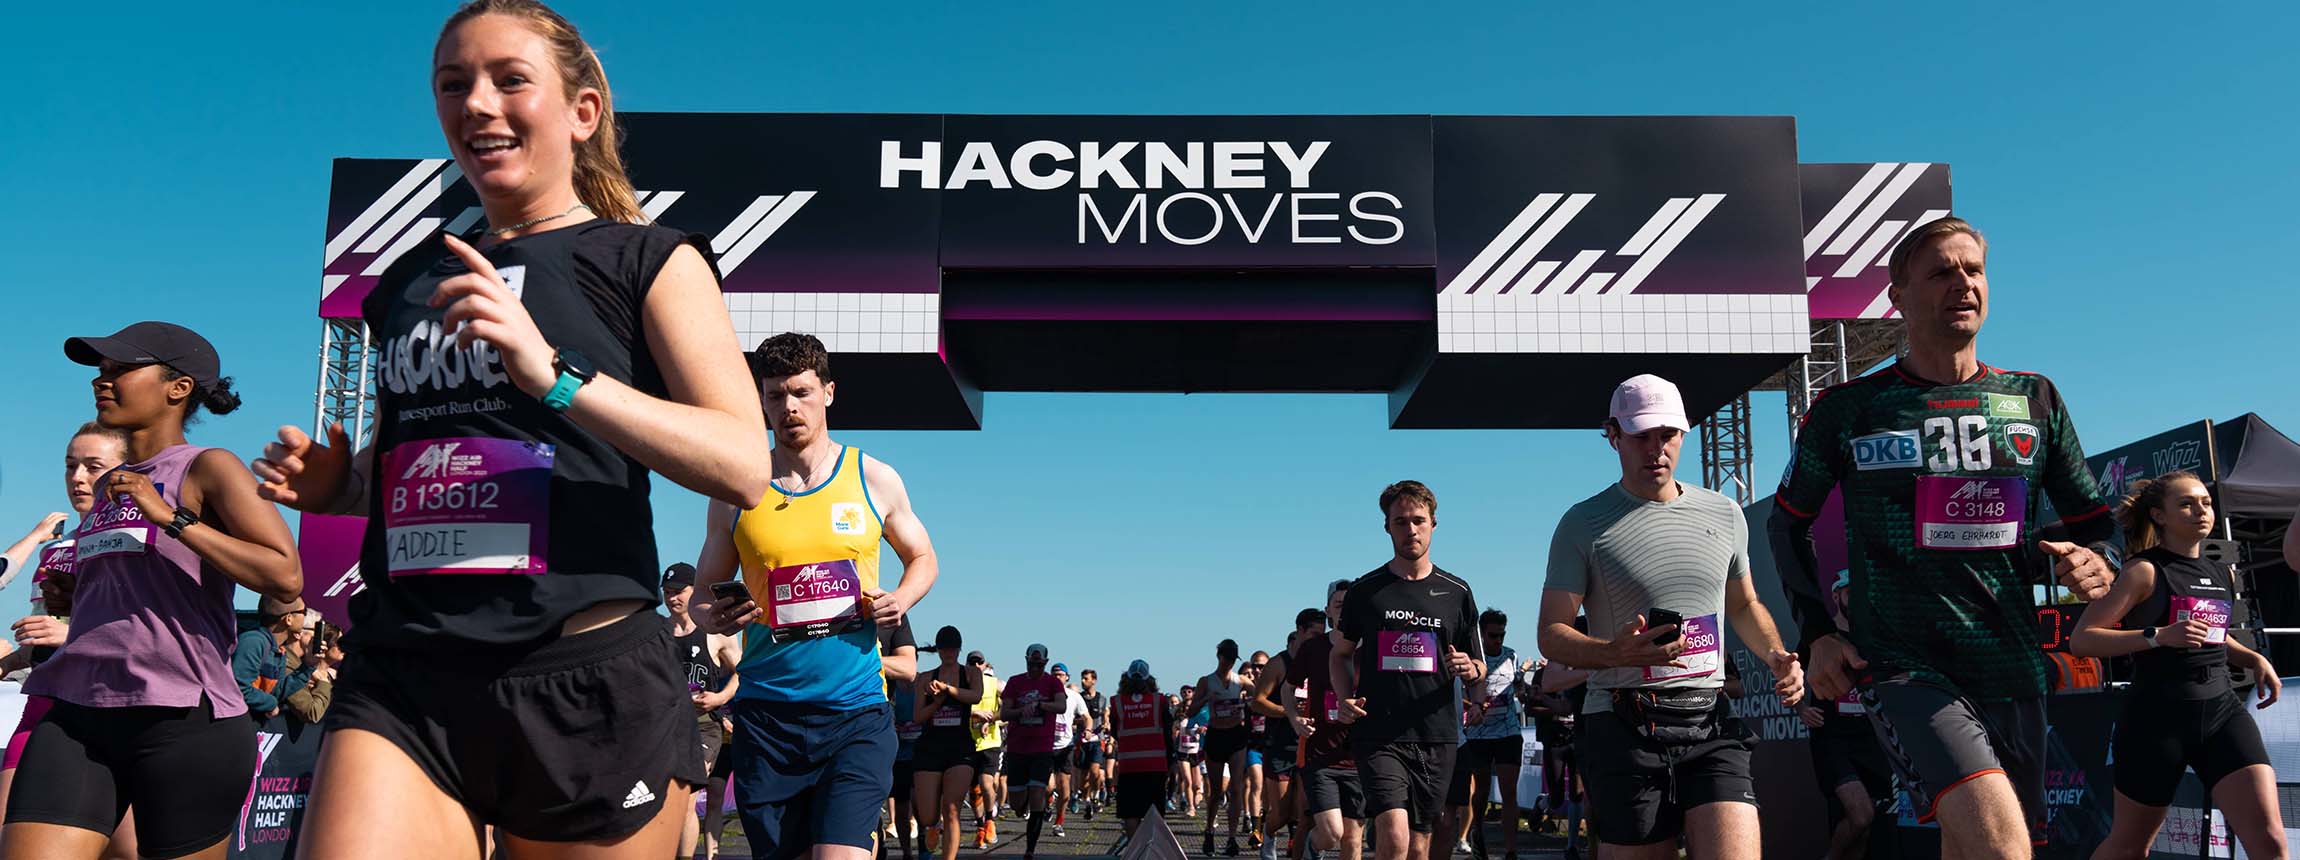 Wizz air hackney marathon runners